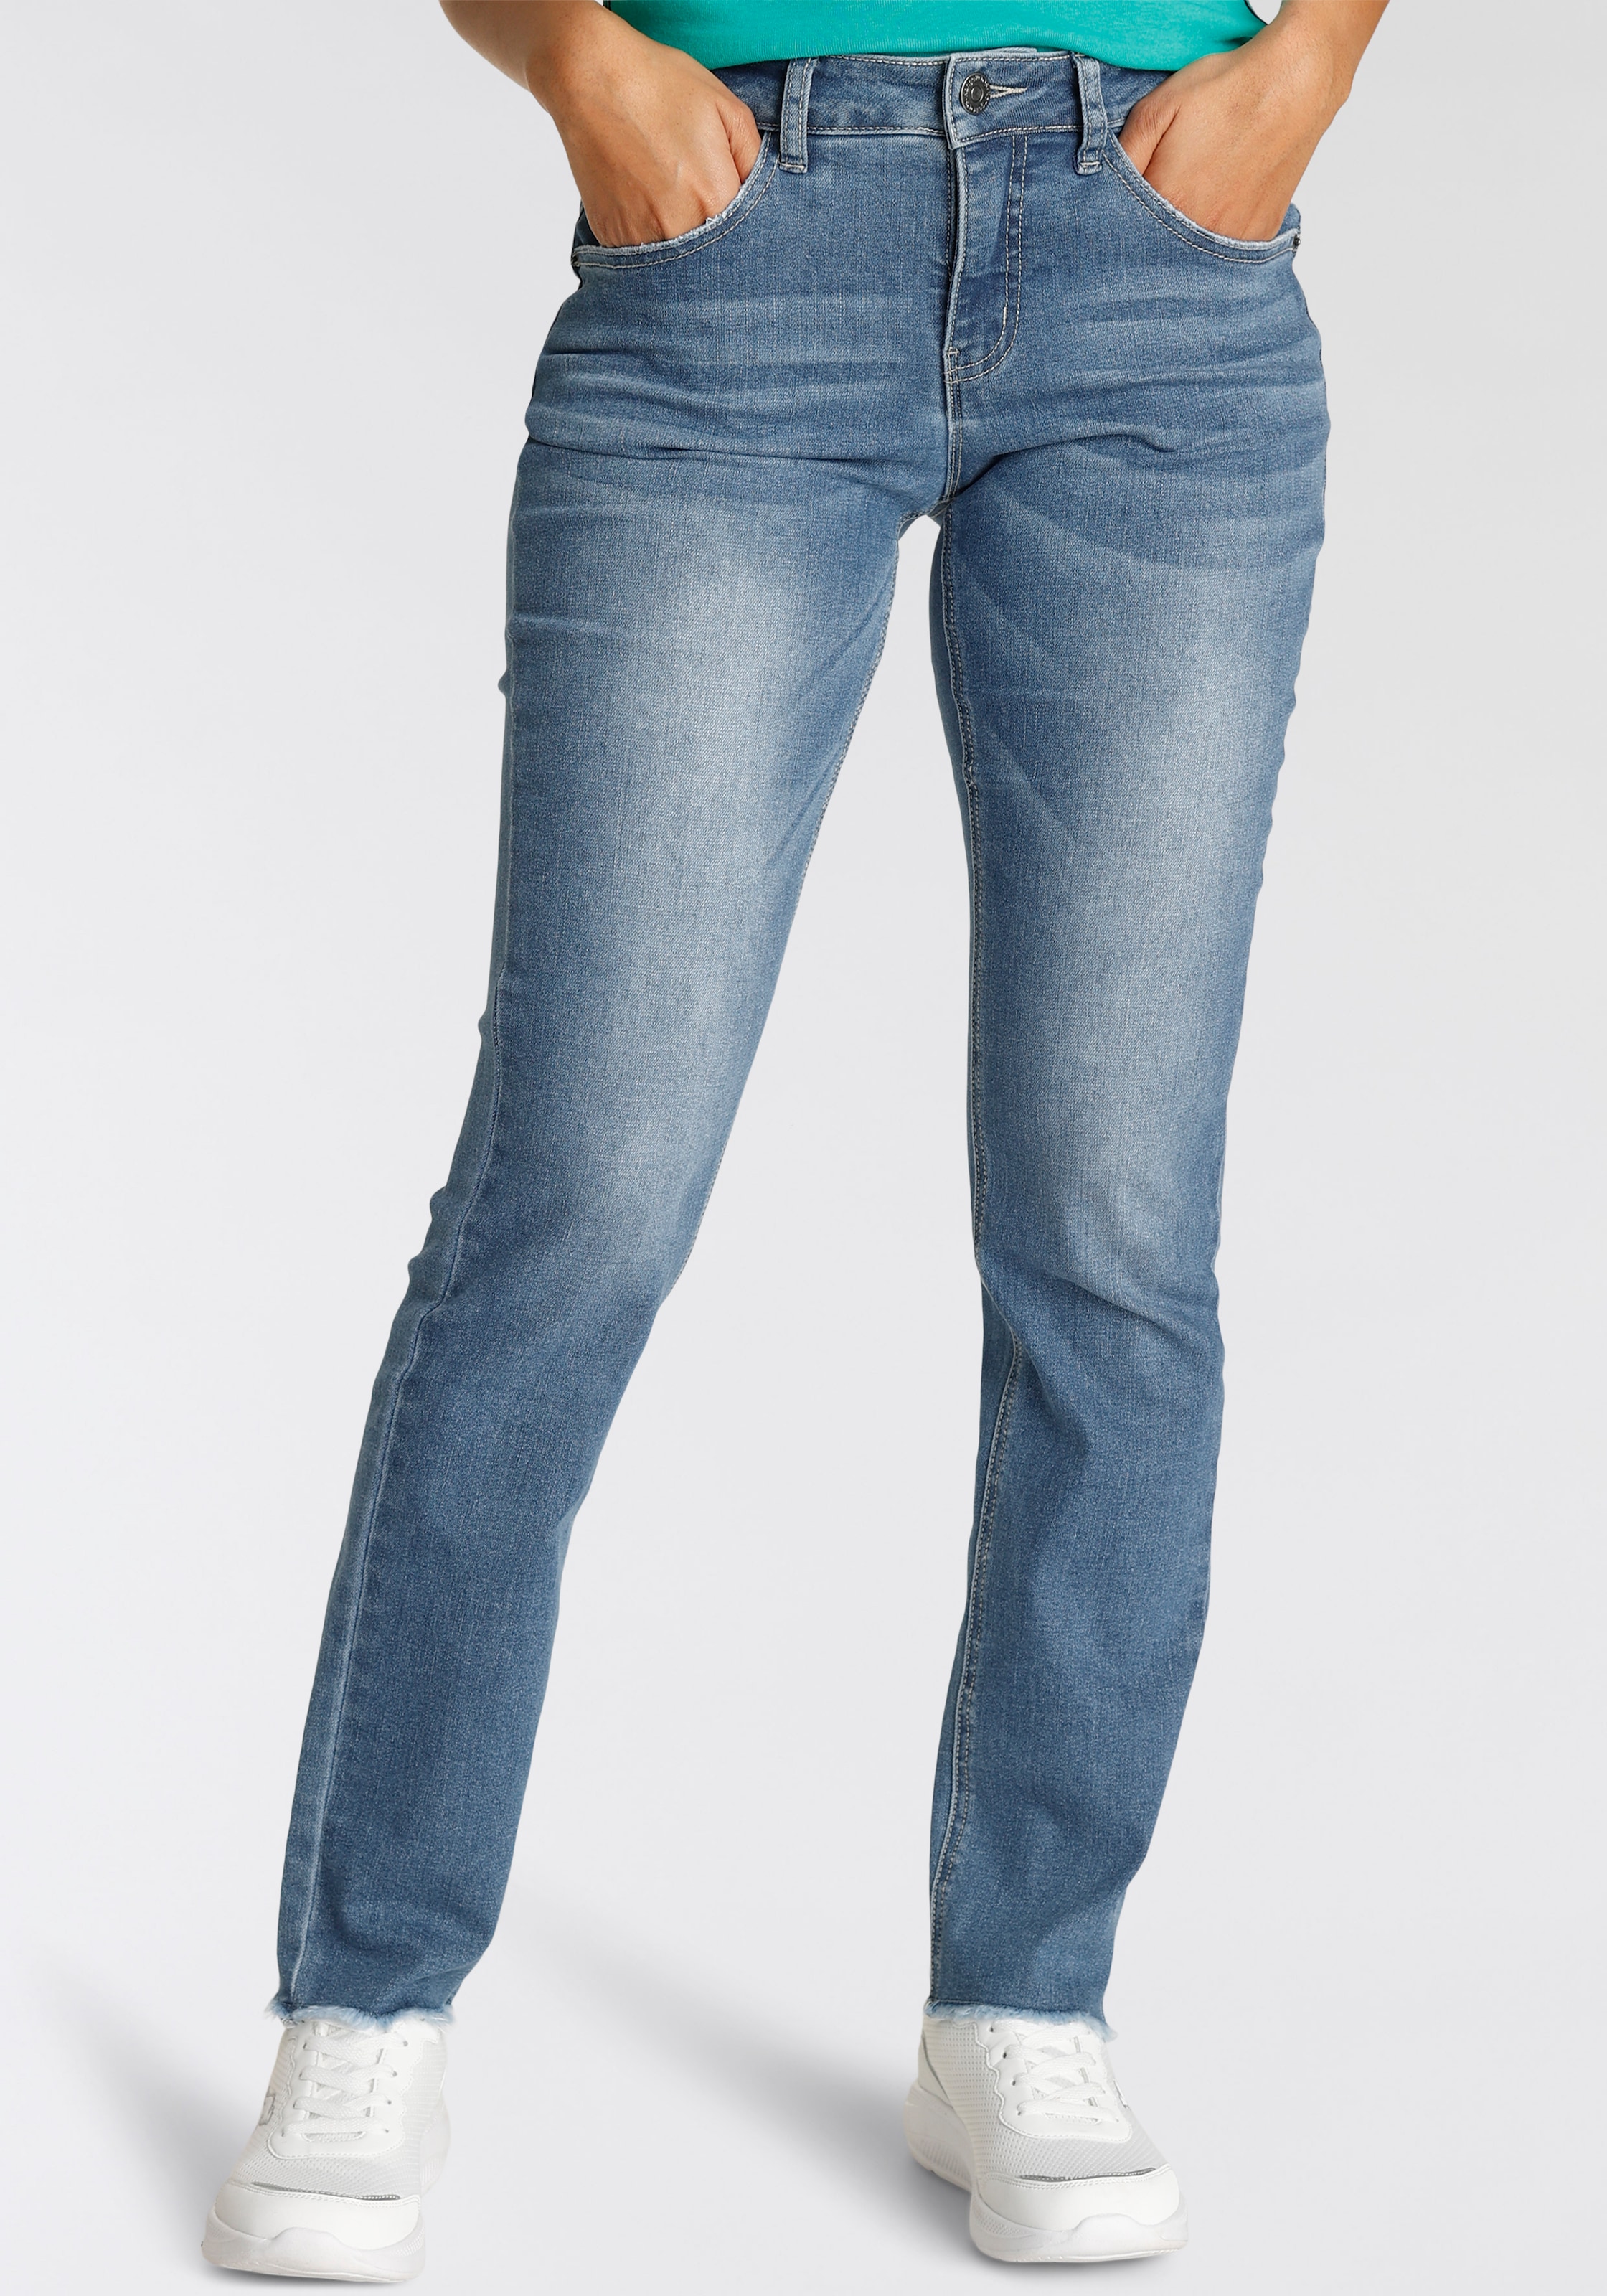 begrenzte Verkaufsstelle KangaROOS Regular-fit-Jeans »STRAIGHT-FIT MID - bei online Mit KOLLEKTION offenem Schweiz Jelmoli-Versand NEUE shoppen RISE«, Saum